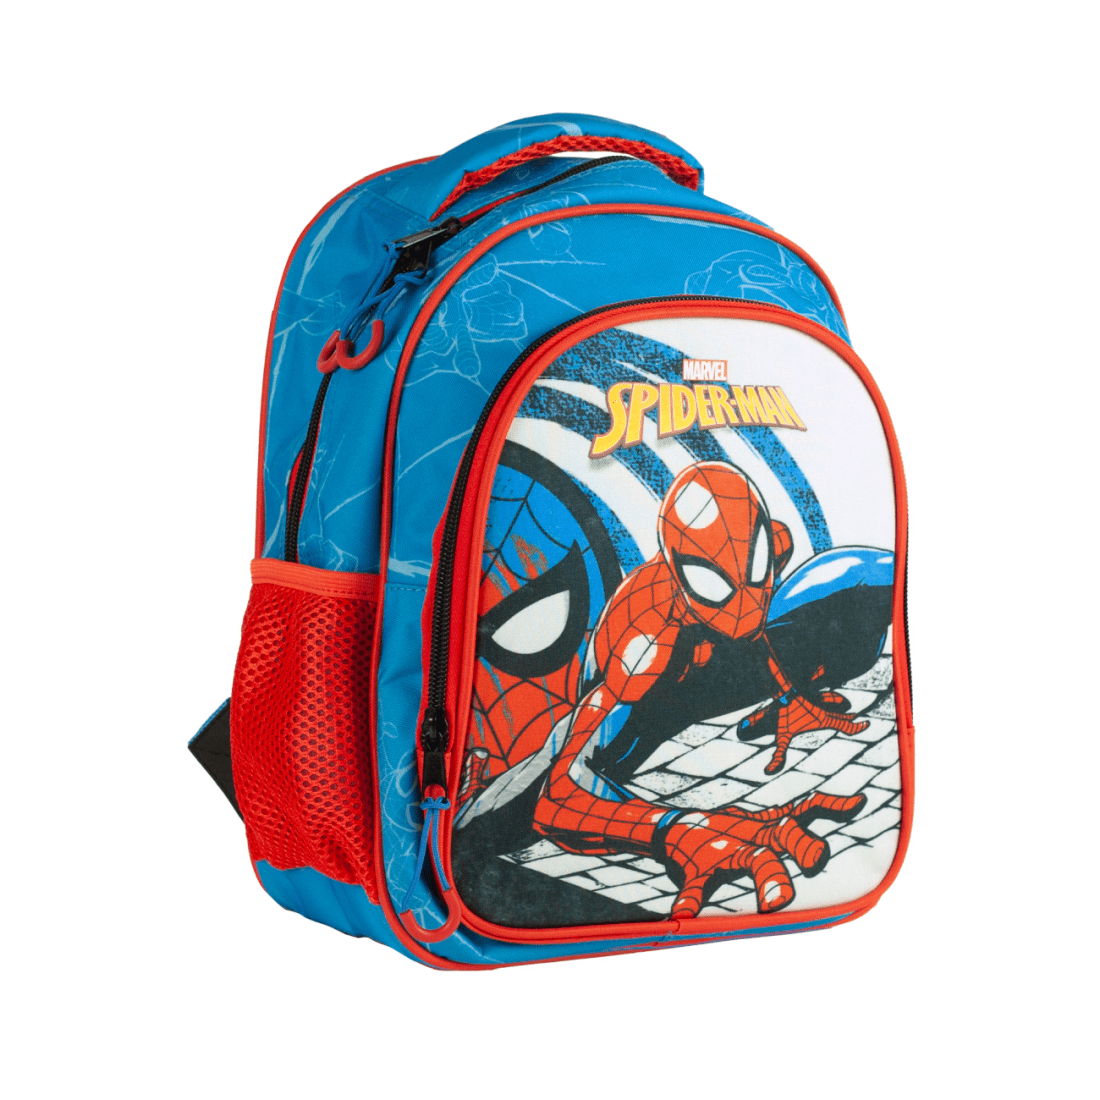 Τσάντα Πλάτης Νηπιαγωγείου - Spiderman